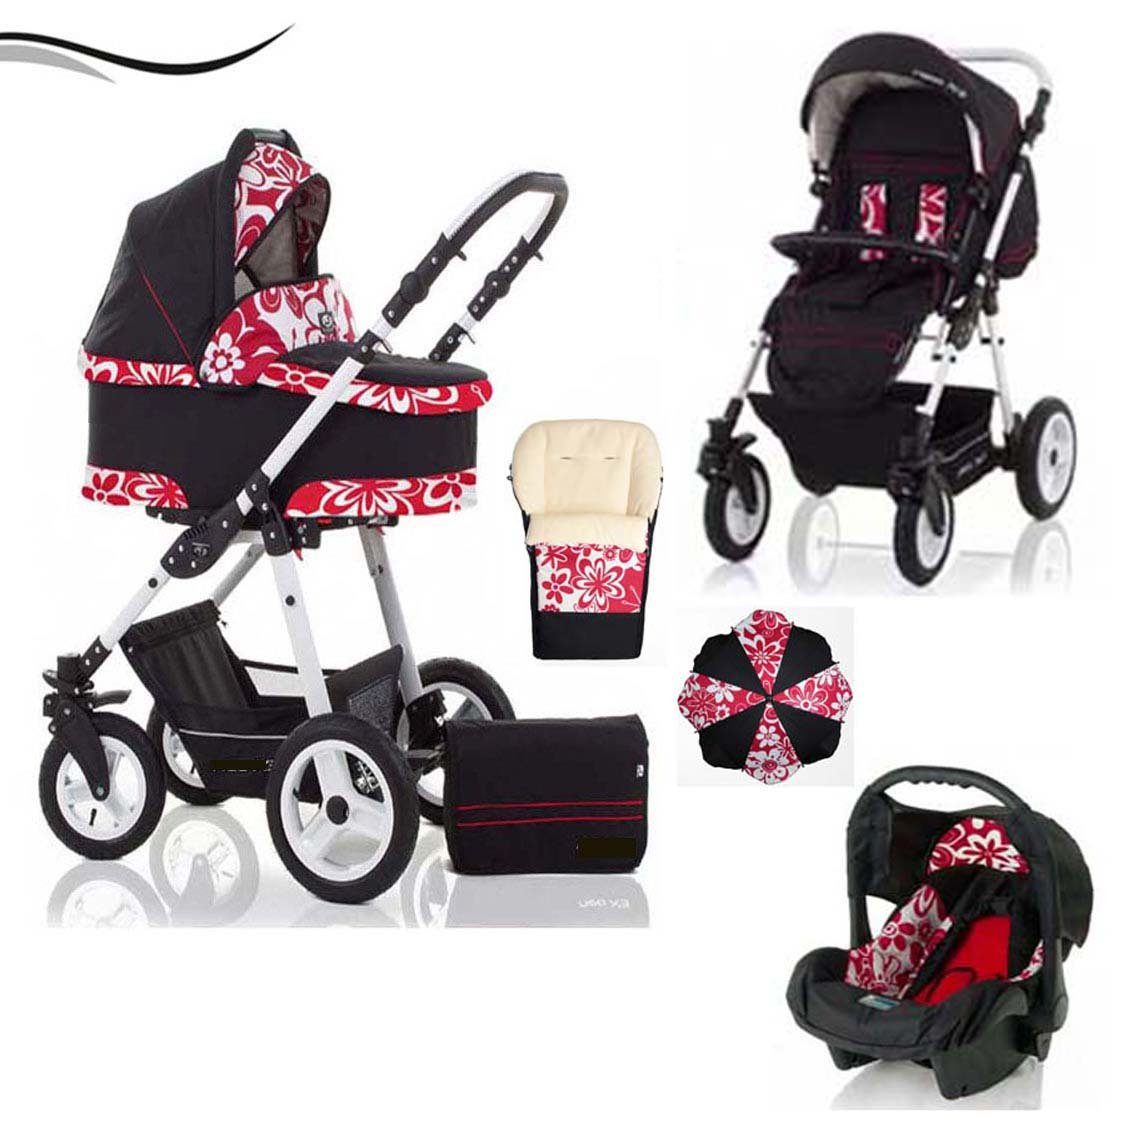 babies-on-wheels Kombi-Kinderwagen City Star 5 in 1 inkl. Autositz, Sonnenschirm und Fußsack - 18 Teile - von Geburt bis 4 Jahre in 16 Farben Rot-Blume | Kombikinderwagen